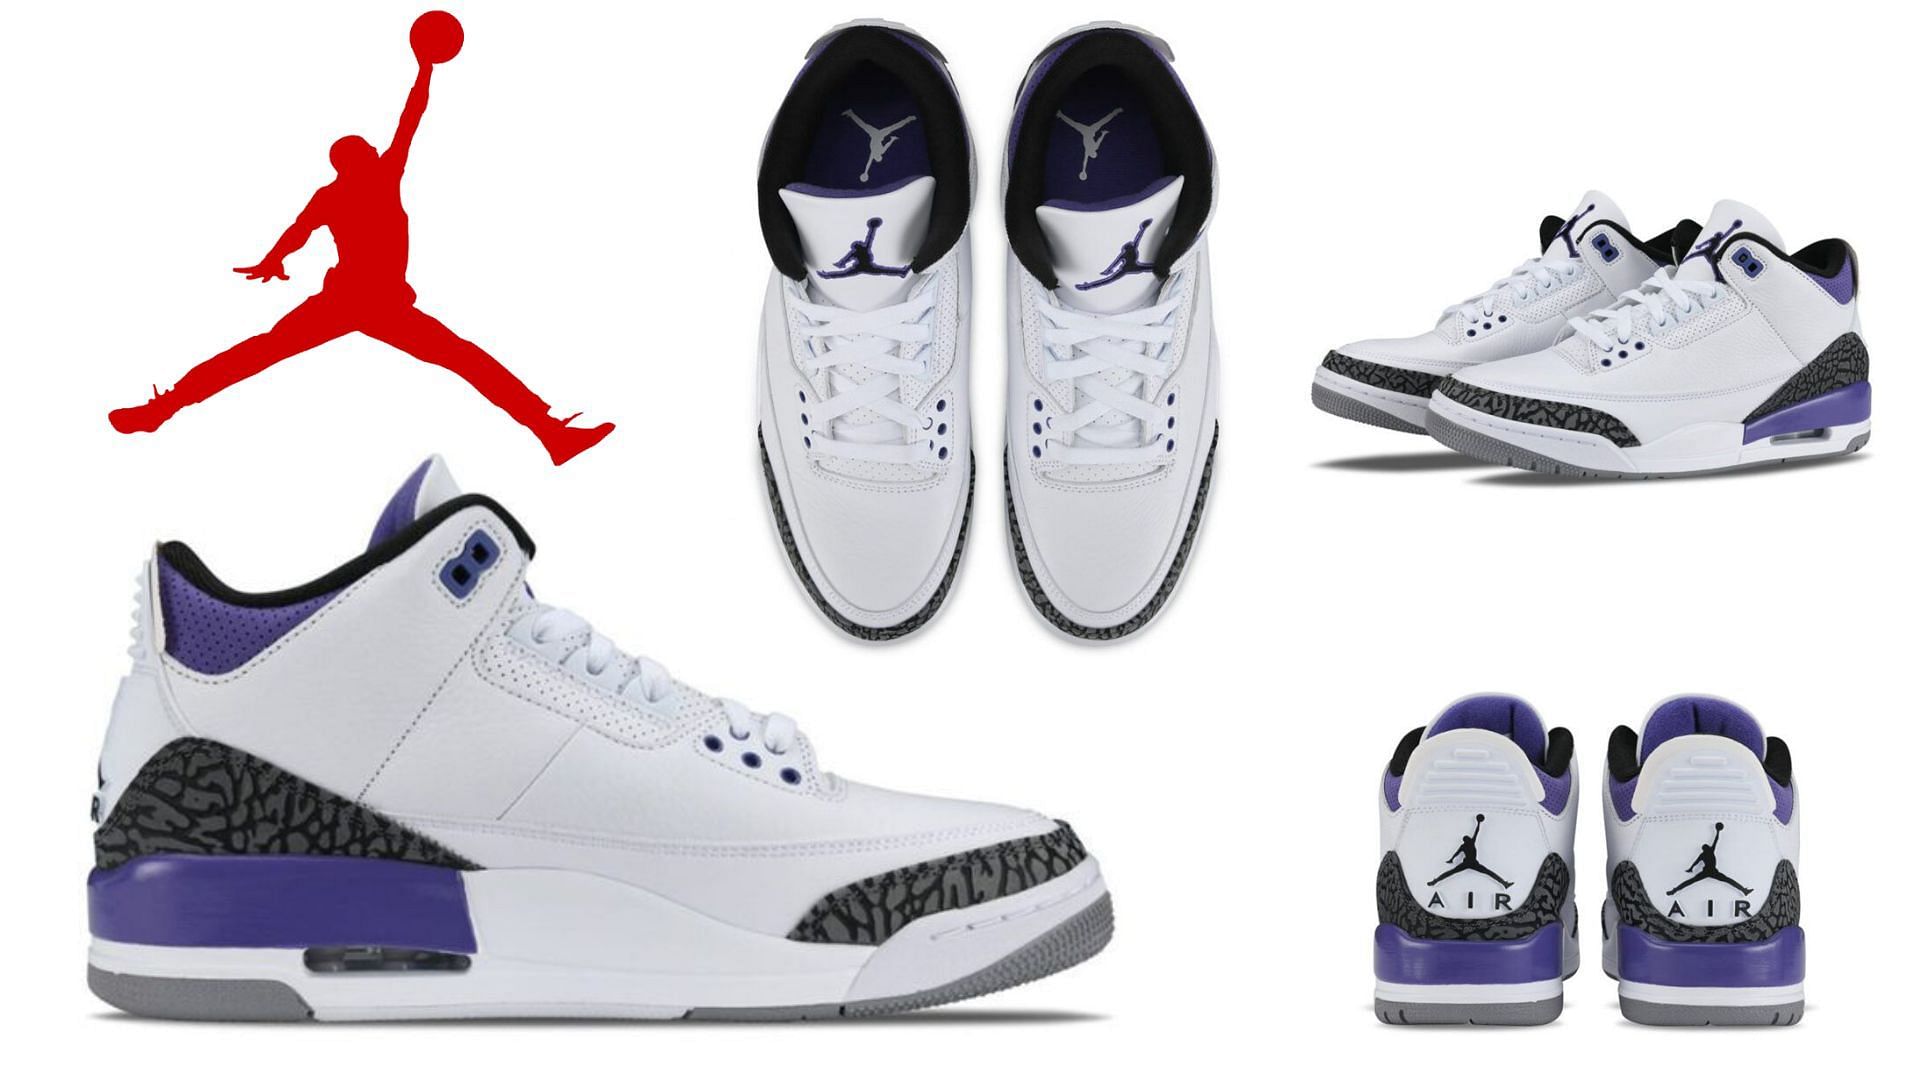 Air Jordan 3 Retro Knicks Coming Soon – Feature